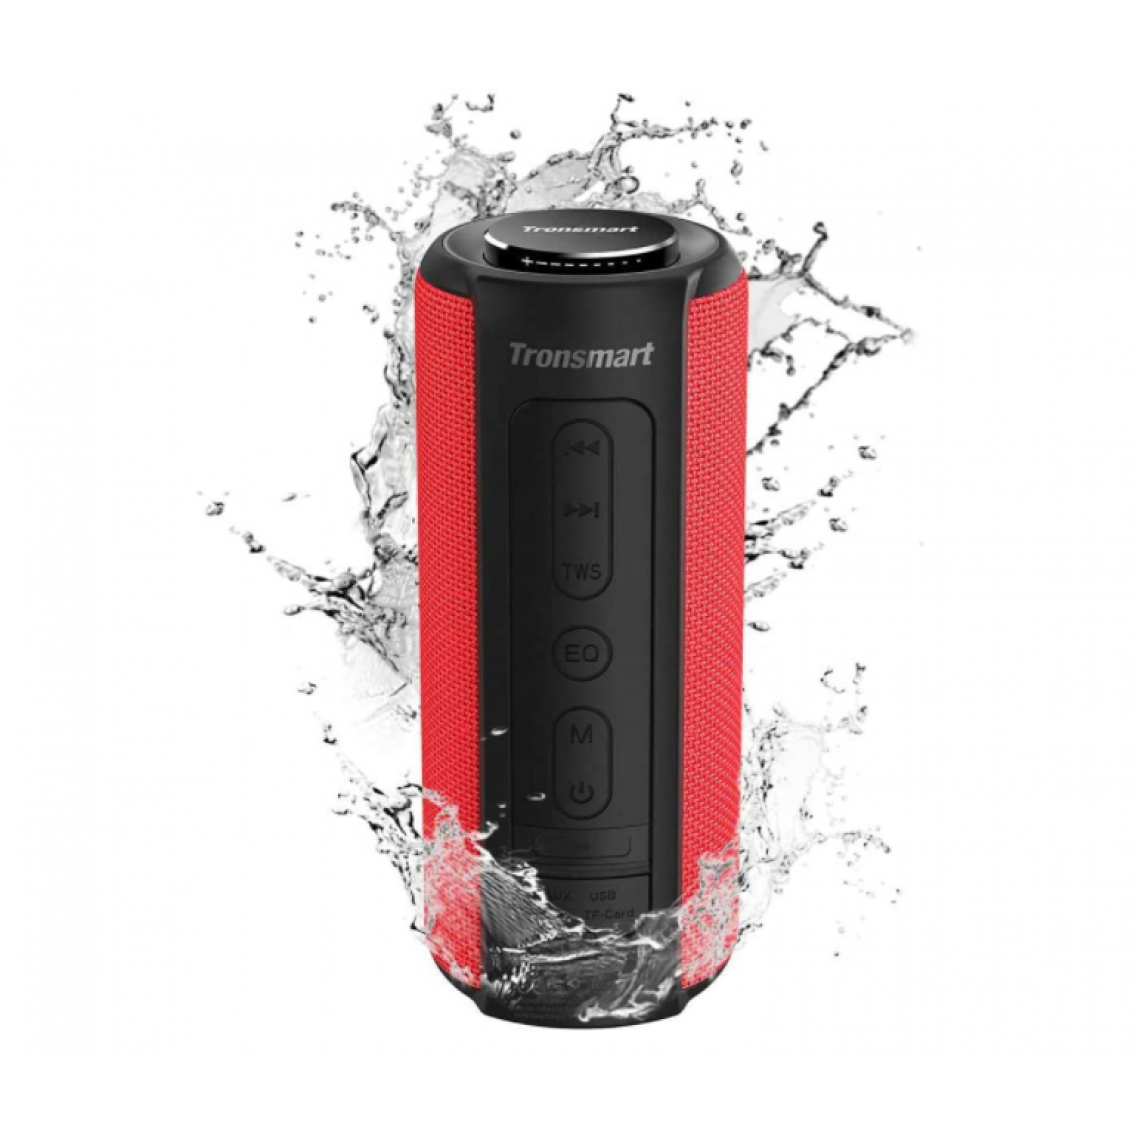 Chrono - Haut-parleur Bluetooth extérieur sans fil 5.0 Tronsmart T6 Plus édition améliorée 40 W avec connexion NFC, son surround 360 °, effets tri-bass, banque d'alimentation, IPX6 étanche, assistant vocal(Rouge) - Enceintes Hifi